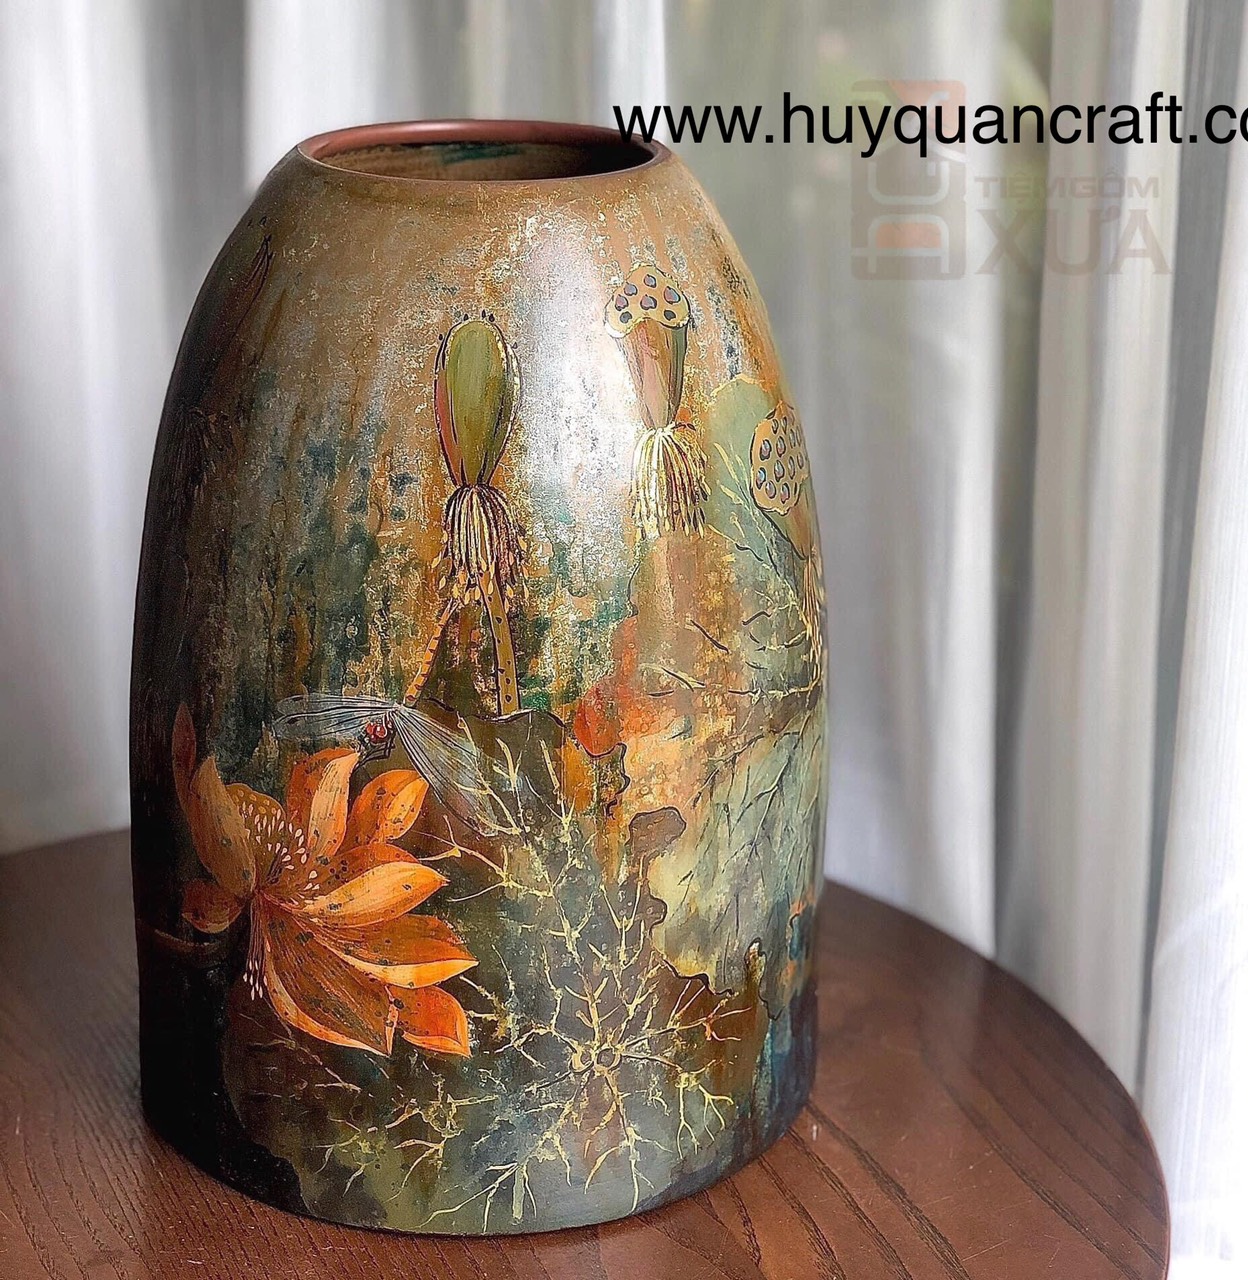 HQ11021-Ceramic flower vase